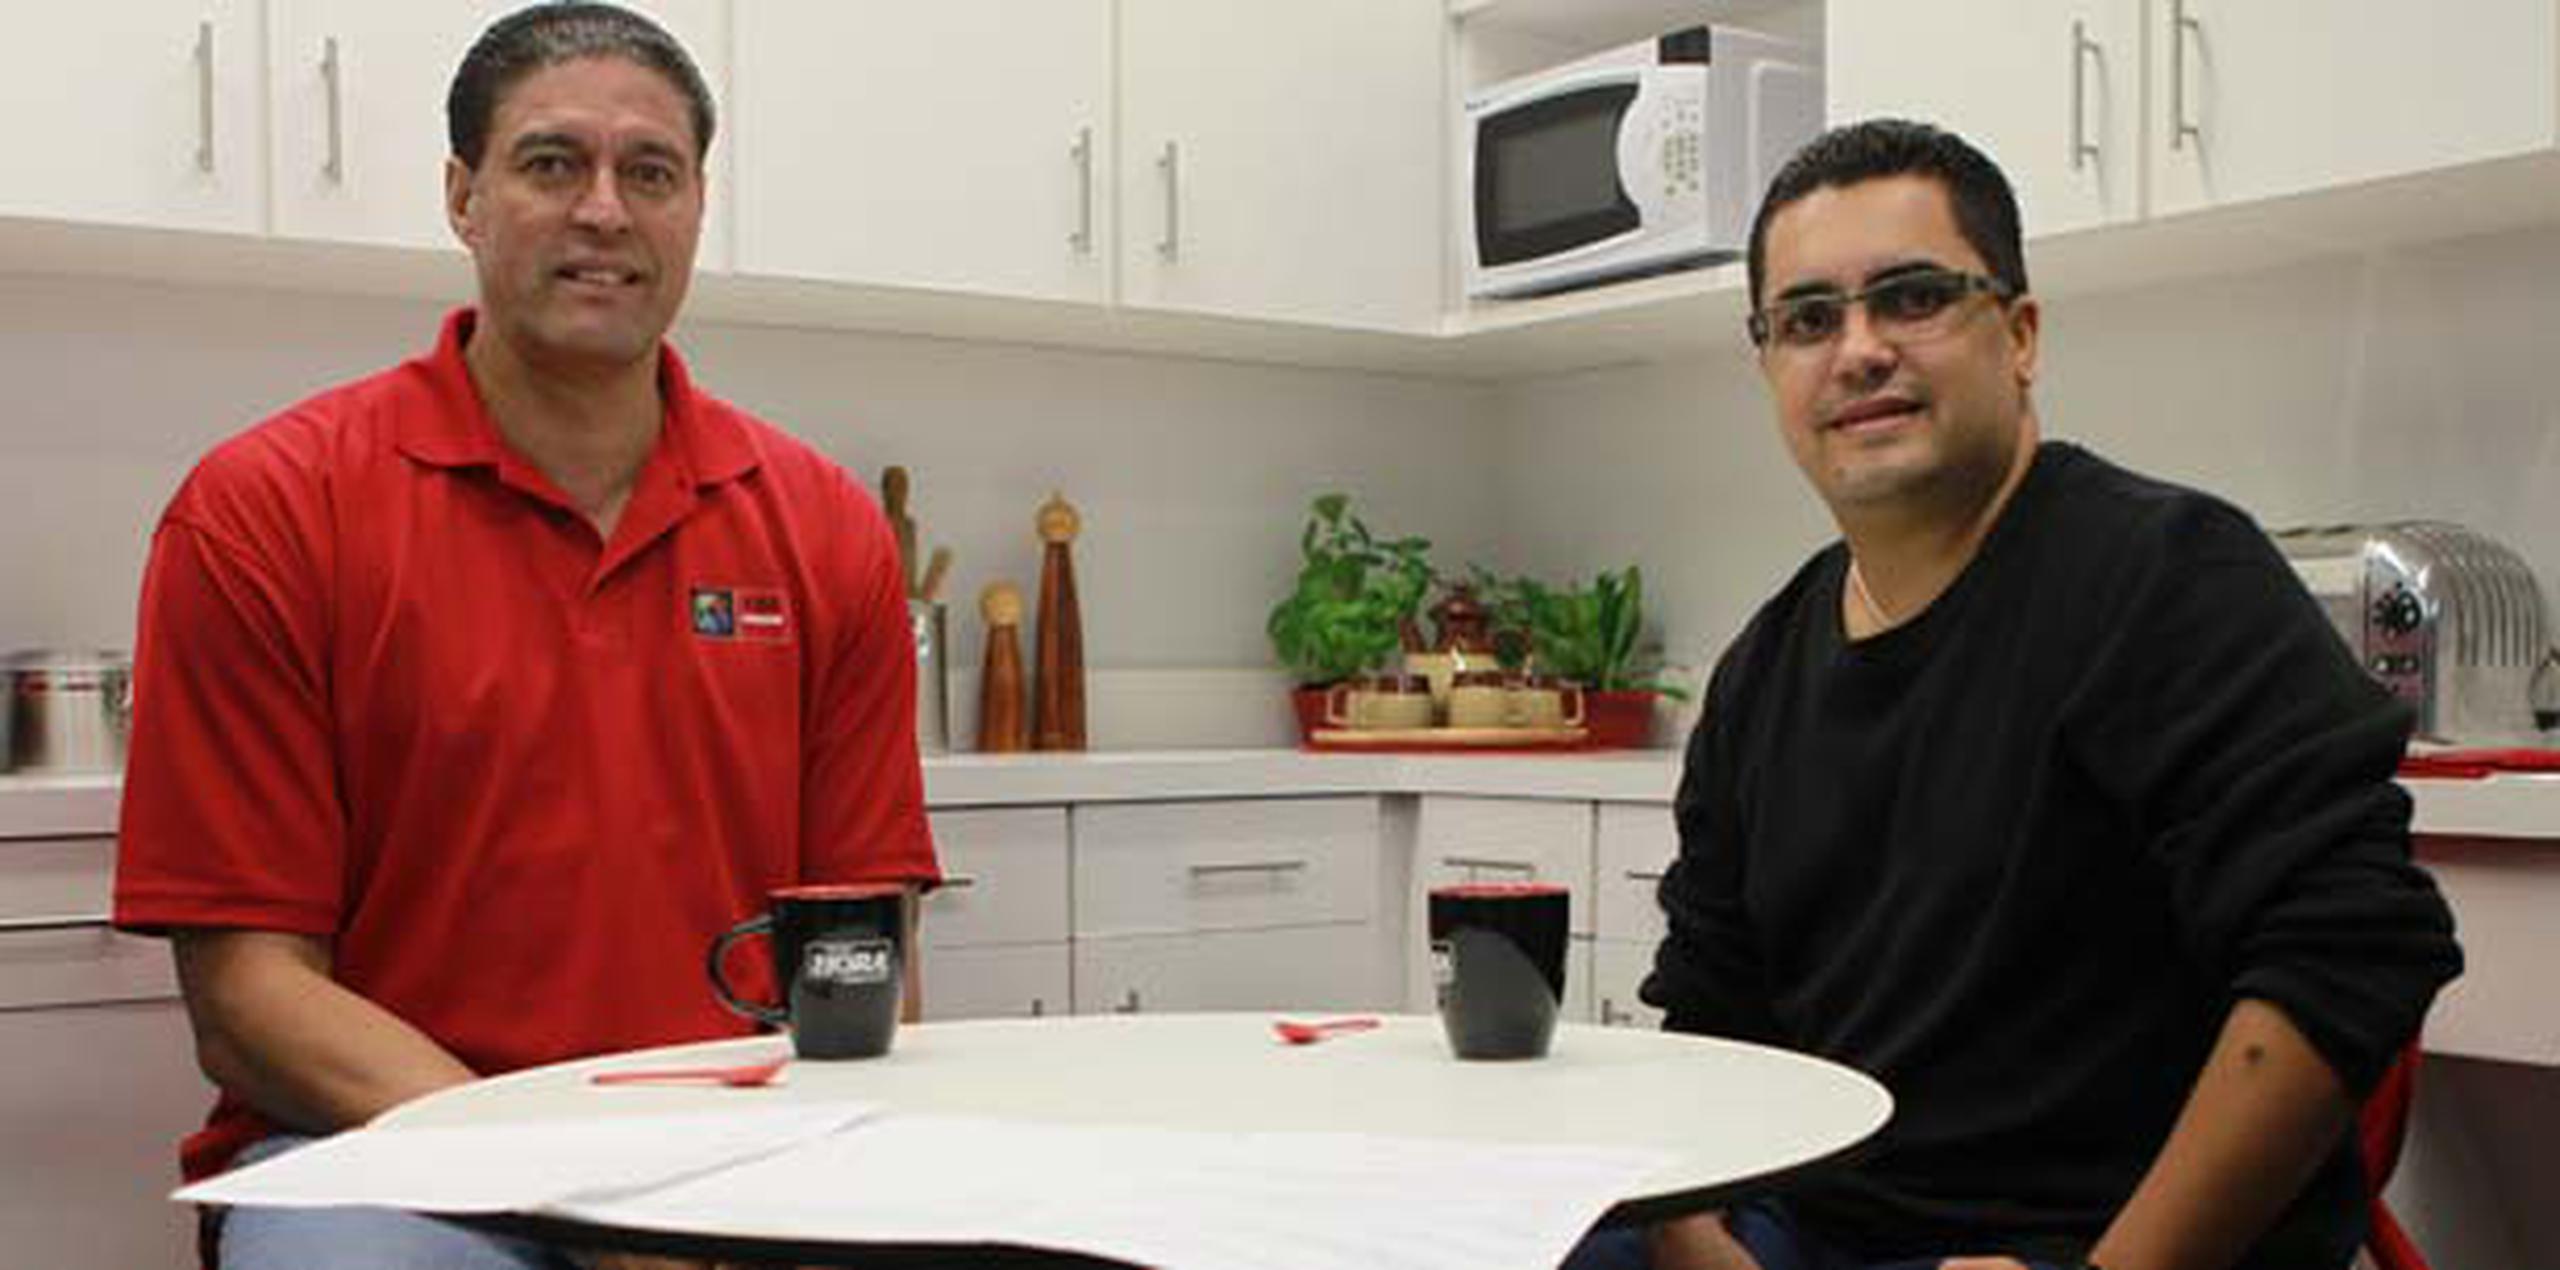 José “Piculín” Ortiz y Lester Jiménez durante la grabación del segmento  “Un cafecito con...”. (vanessa.serra@gfrmedia.com)